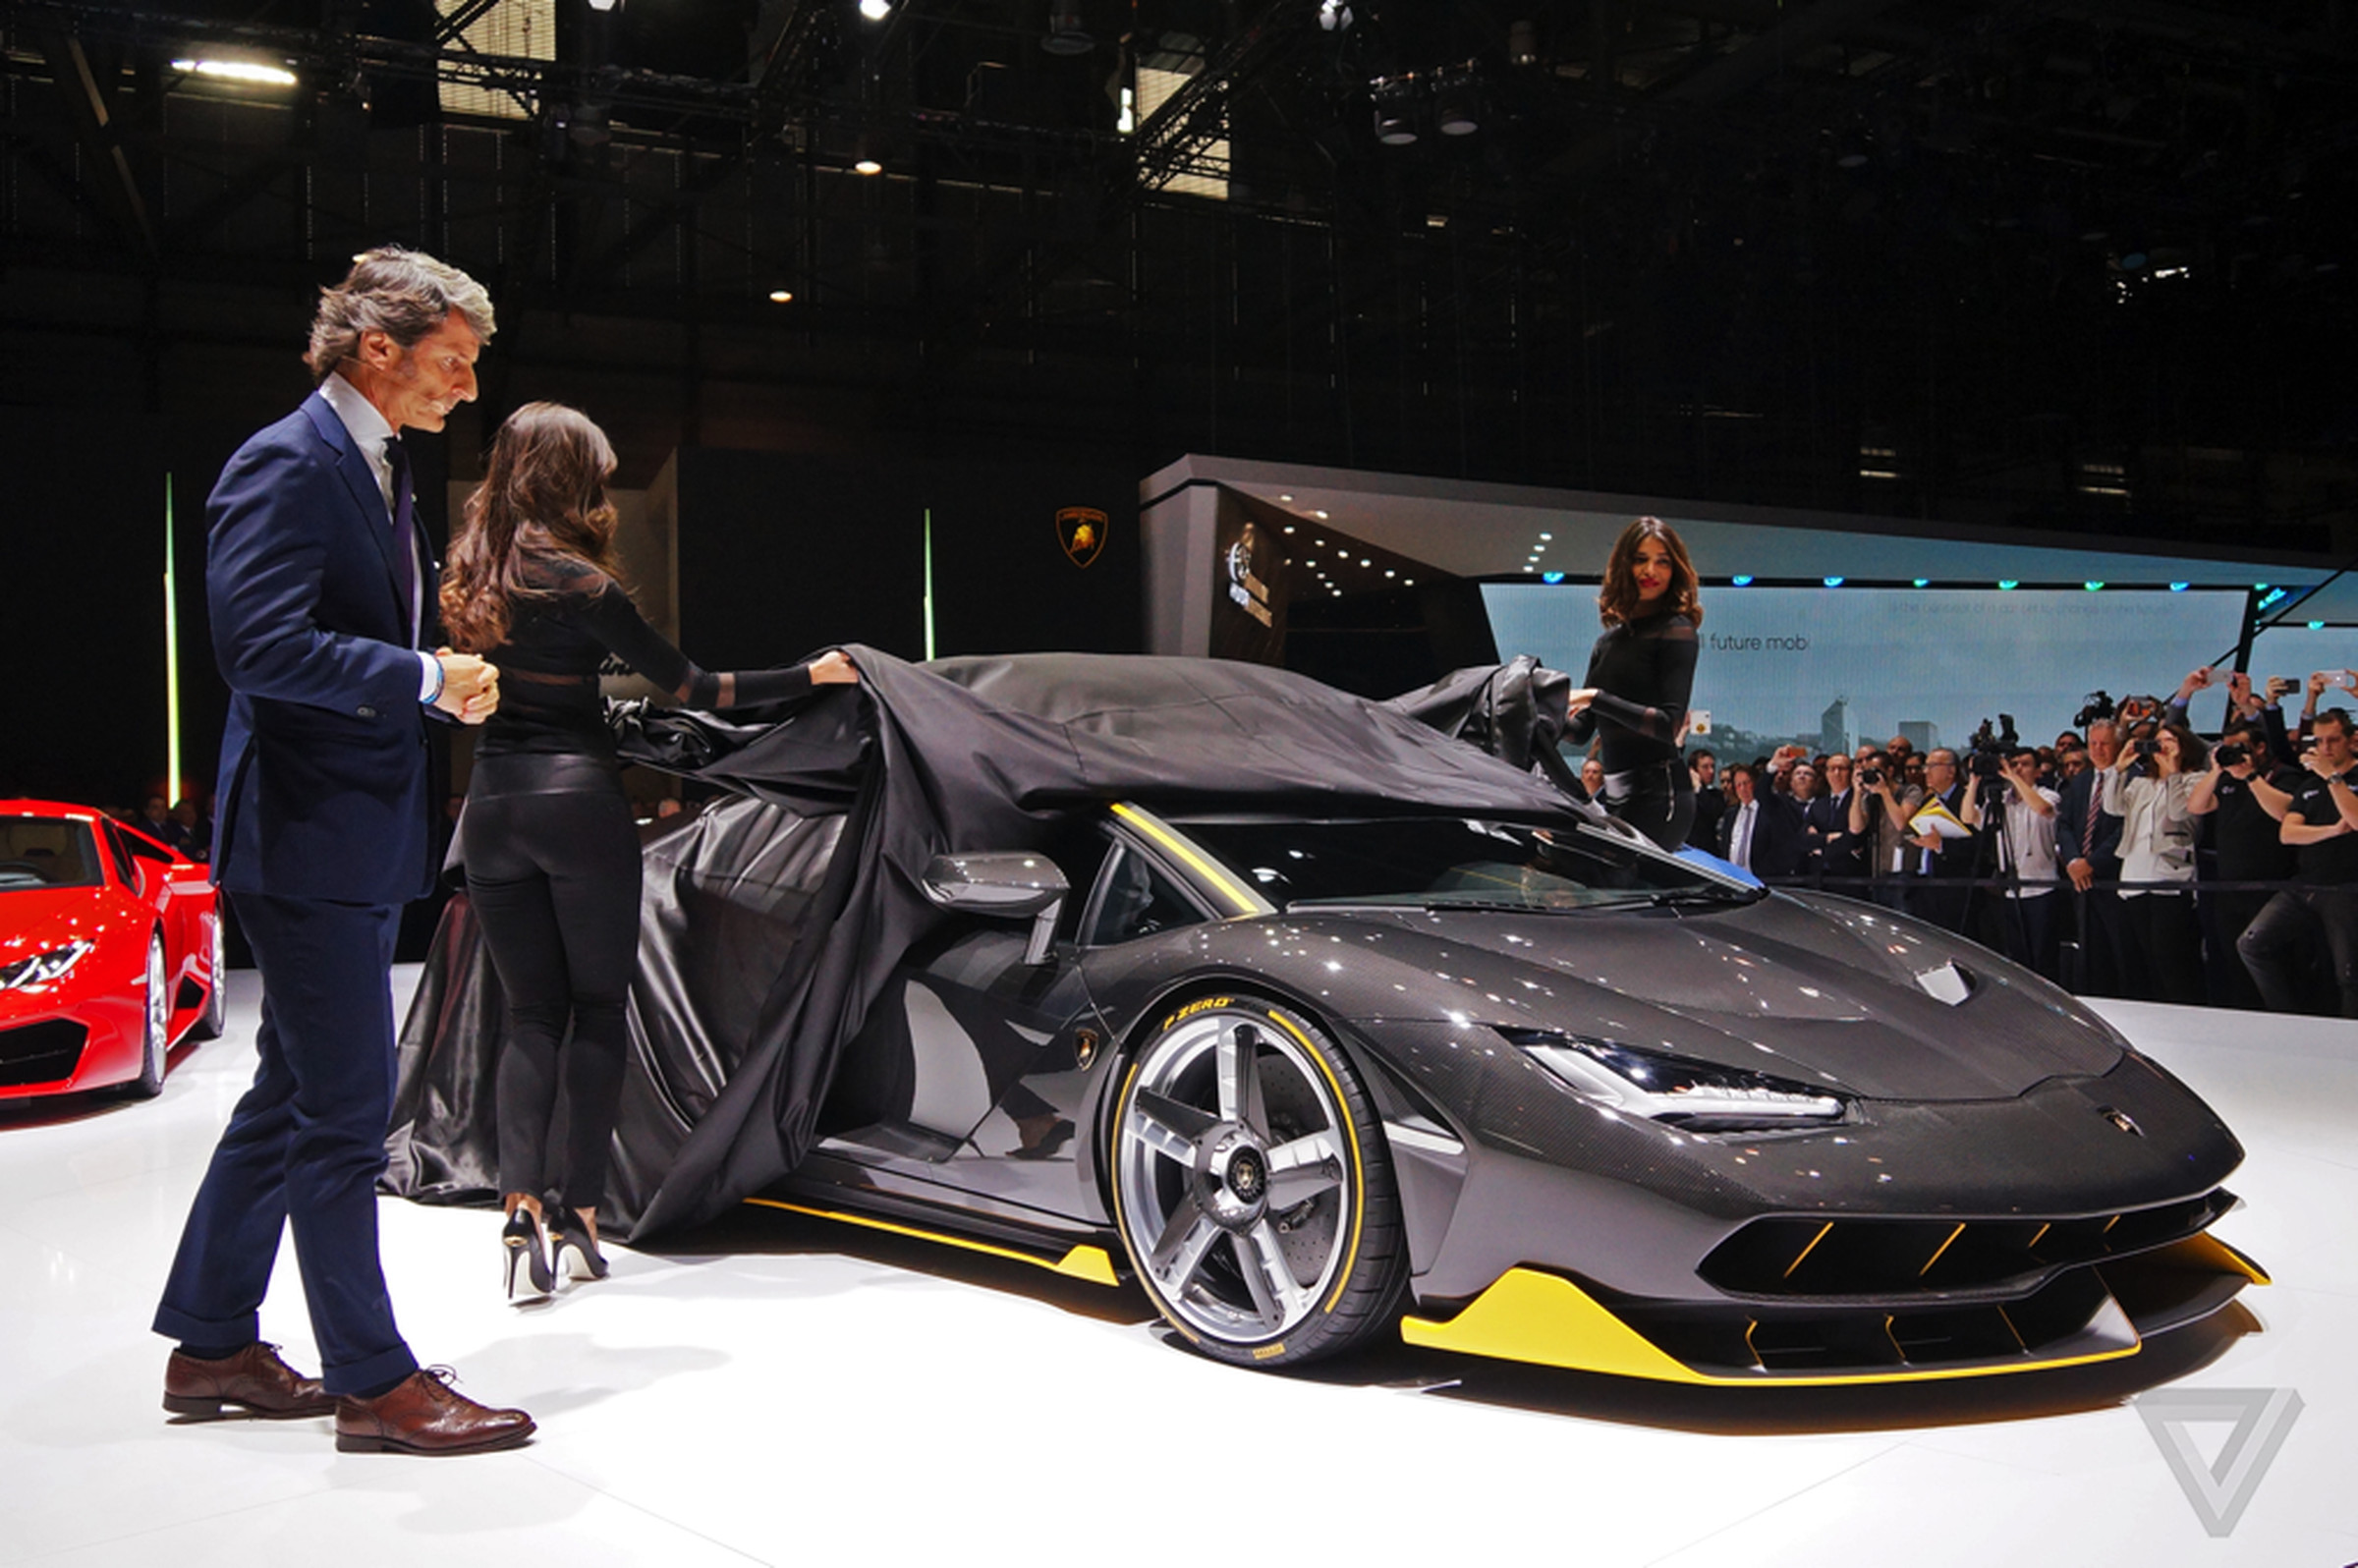 Lamborghini Centenario gallery